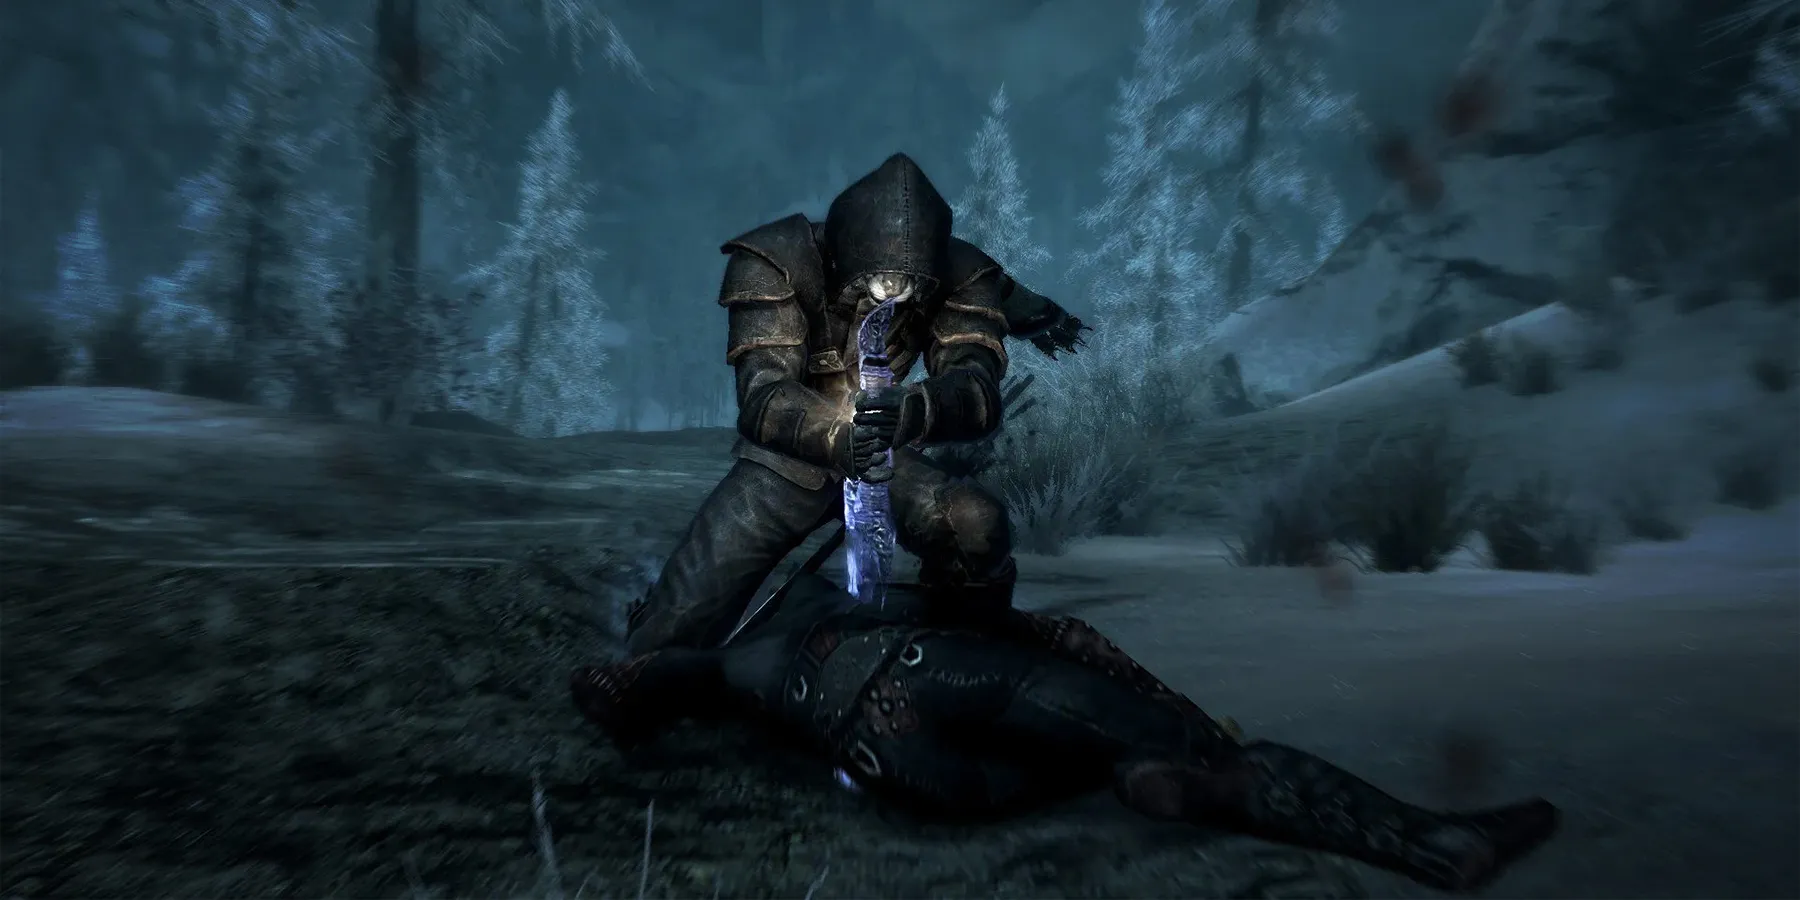 Elder Scrolls 5 Skyrim Kill Camera Highlight Reel Combat Finisher Moves